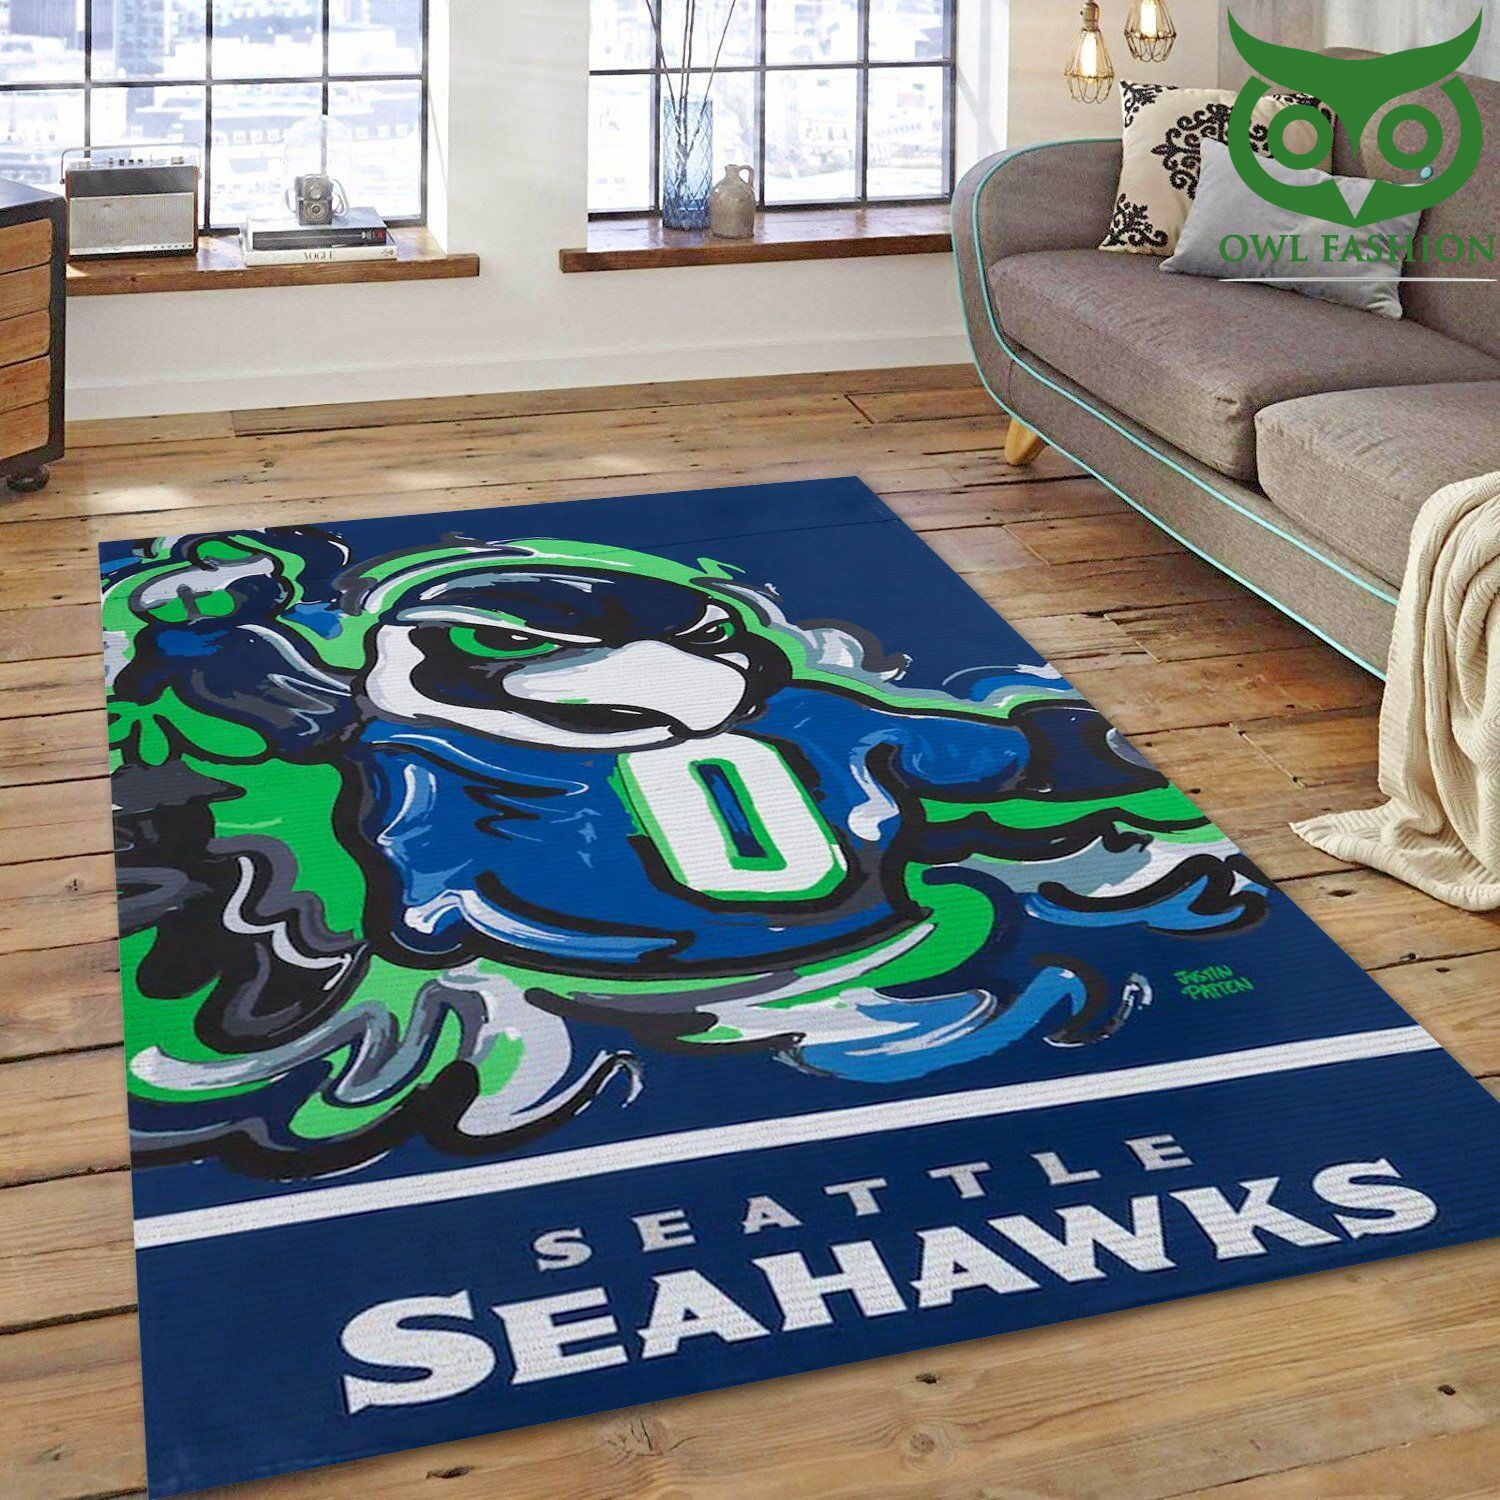 Seattle Seahawks Nfl Football Team decorate floor carpet rug 